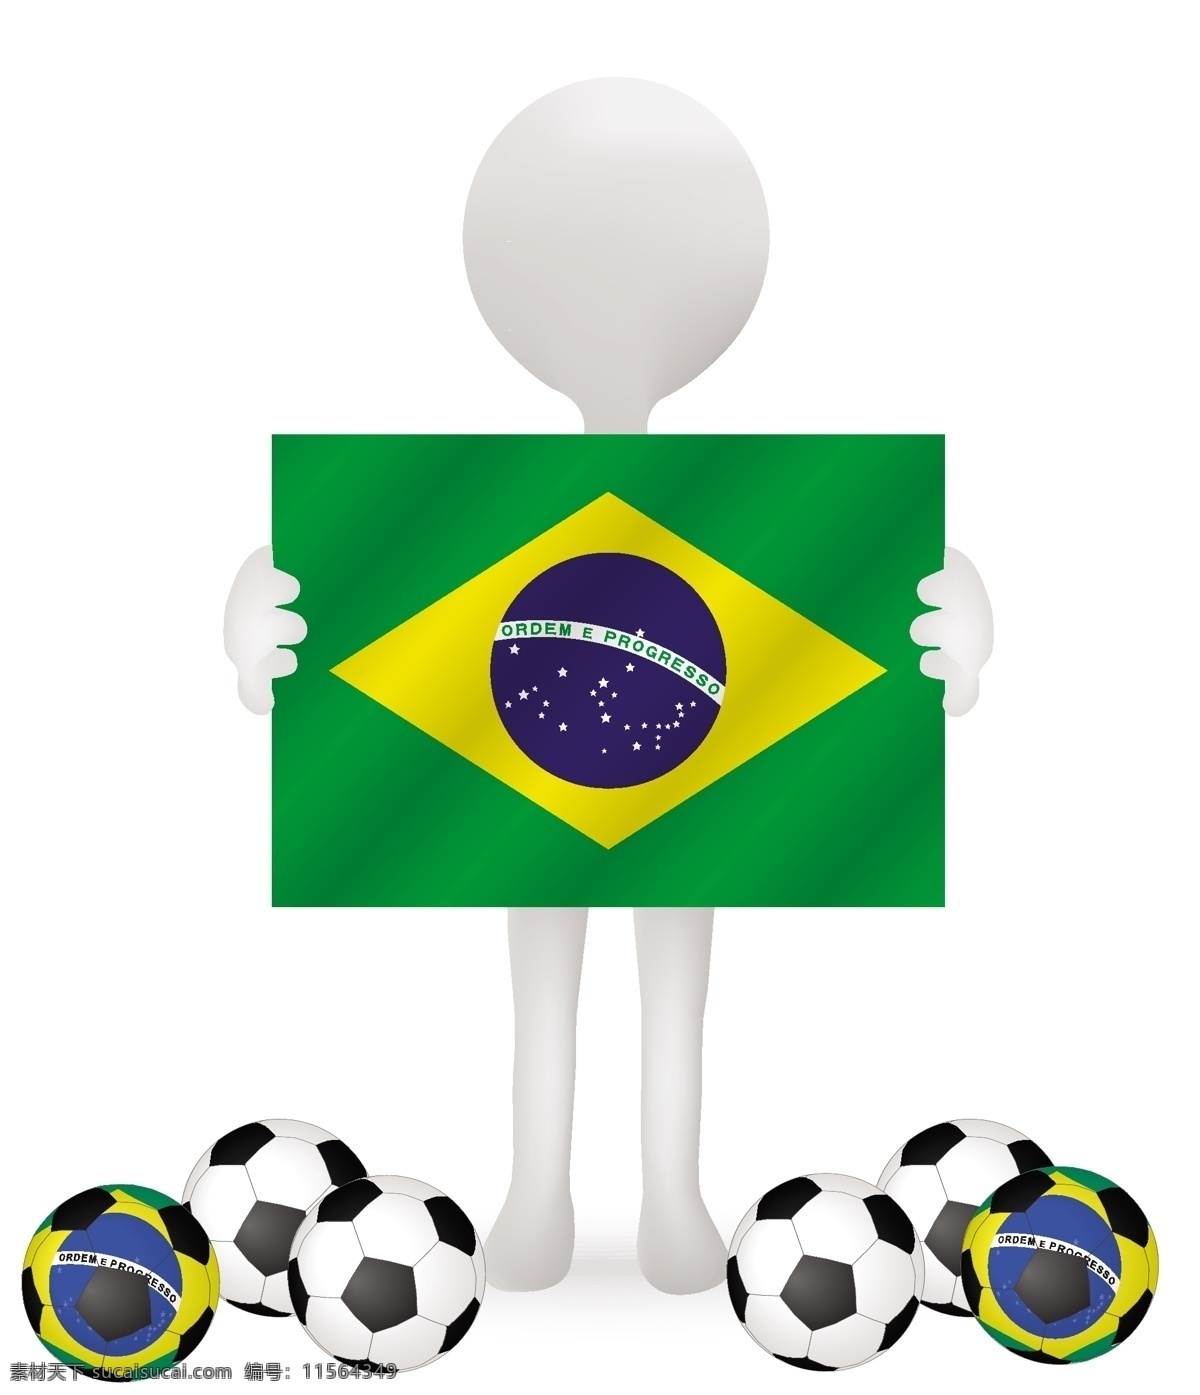 巴西世界杯 巴西 世界杯 模板下载 2014 足球 足球广告 足球素材 宣传广告 体育运动 生活百科 矢量素材 白色